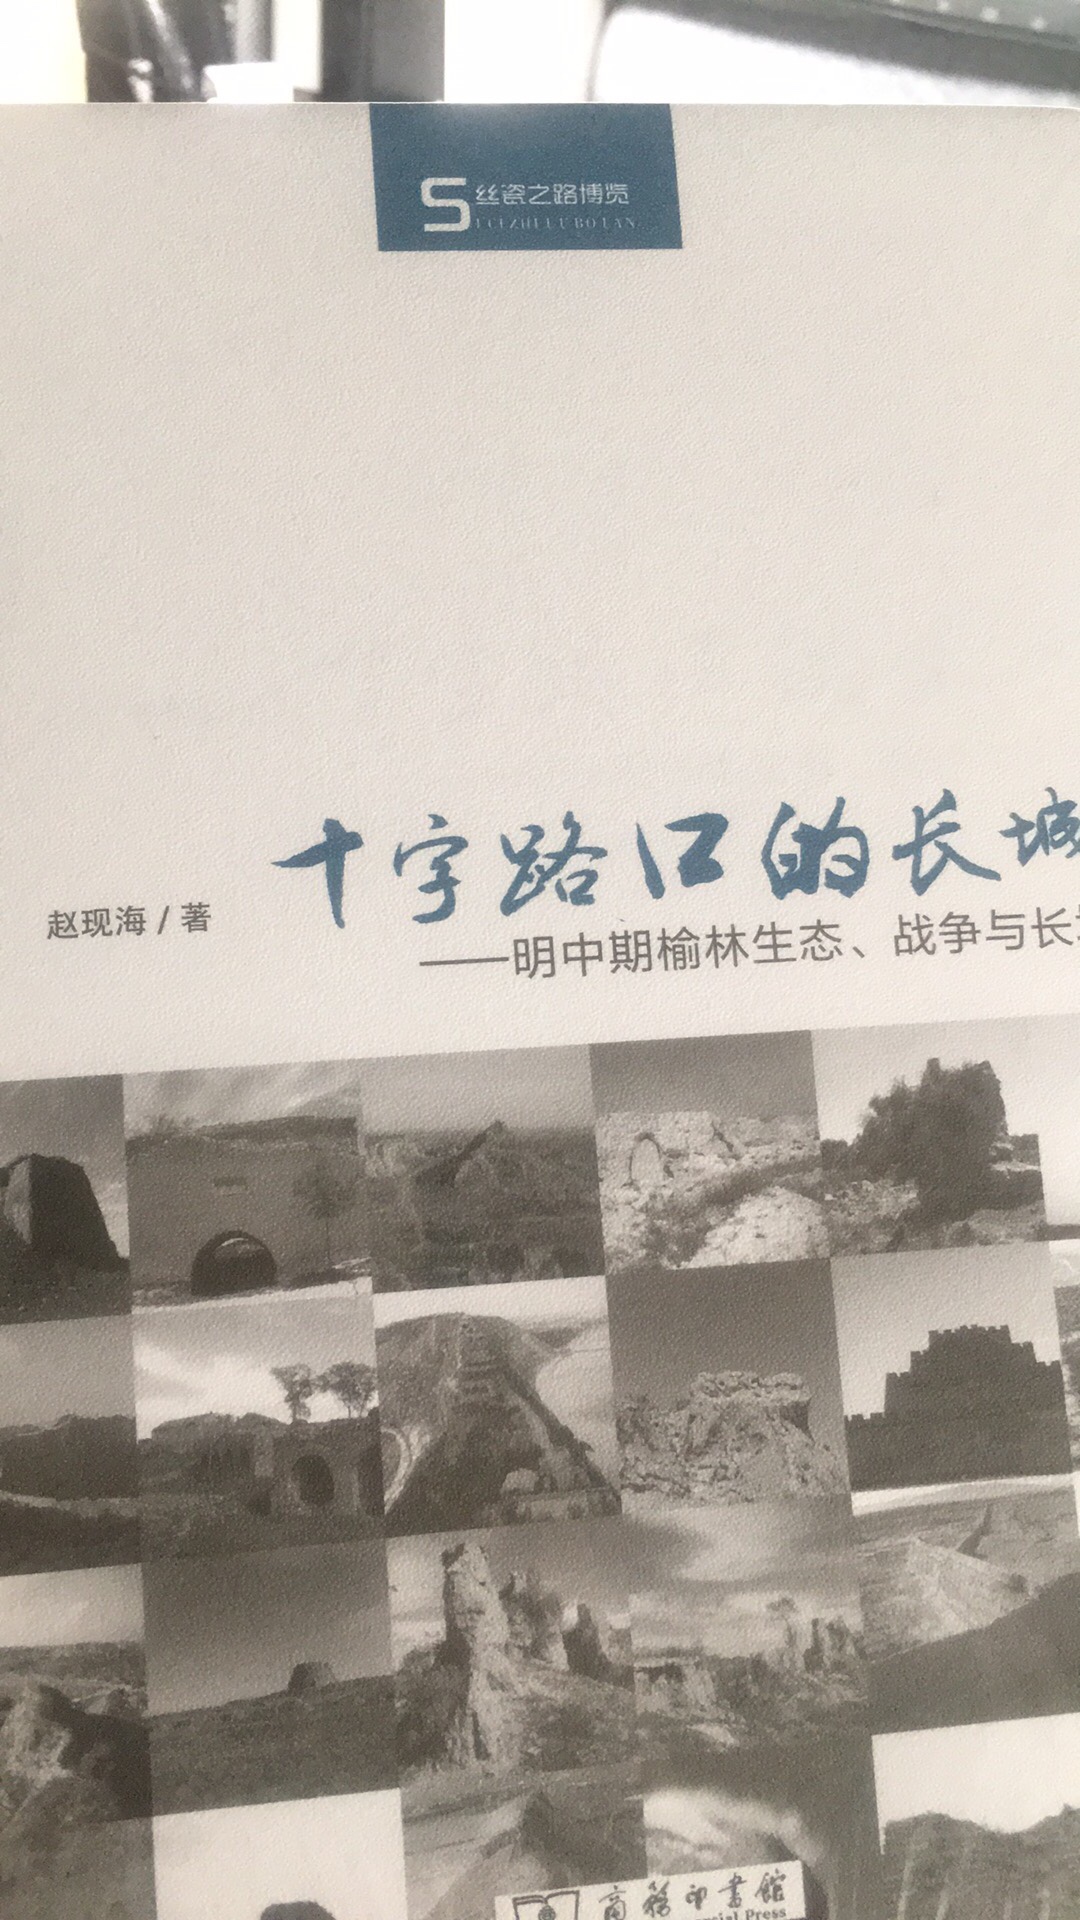 丝瓷之路博览十字路口的长城，明中期榆林生态战争与长城。这本书好像之前没有买到。